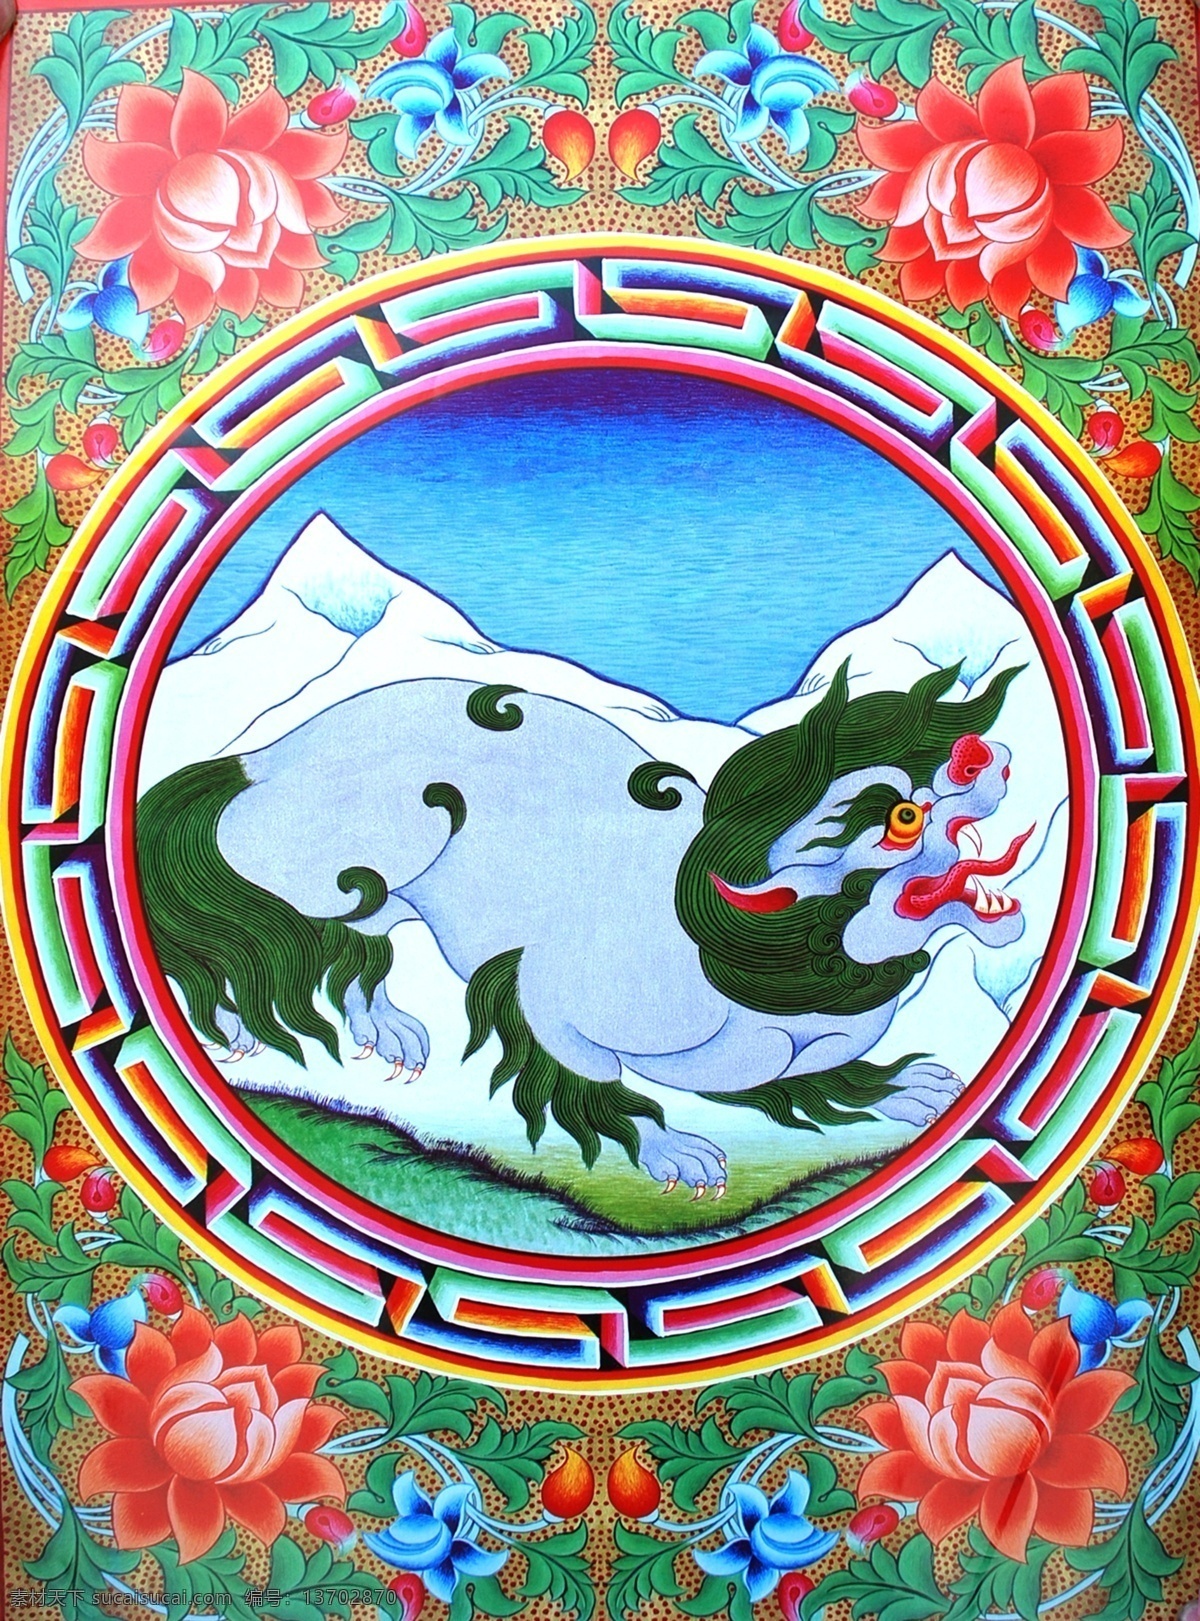 无框画 佛教 手绘 墙画 壁画 卧室画 绘画 吉祥 图案 藏族 宗教 和平 平安 宗教设计 藏族传统图案 狮子 雪山 绘画书法 文化艺术